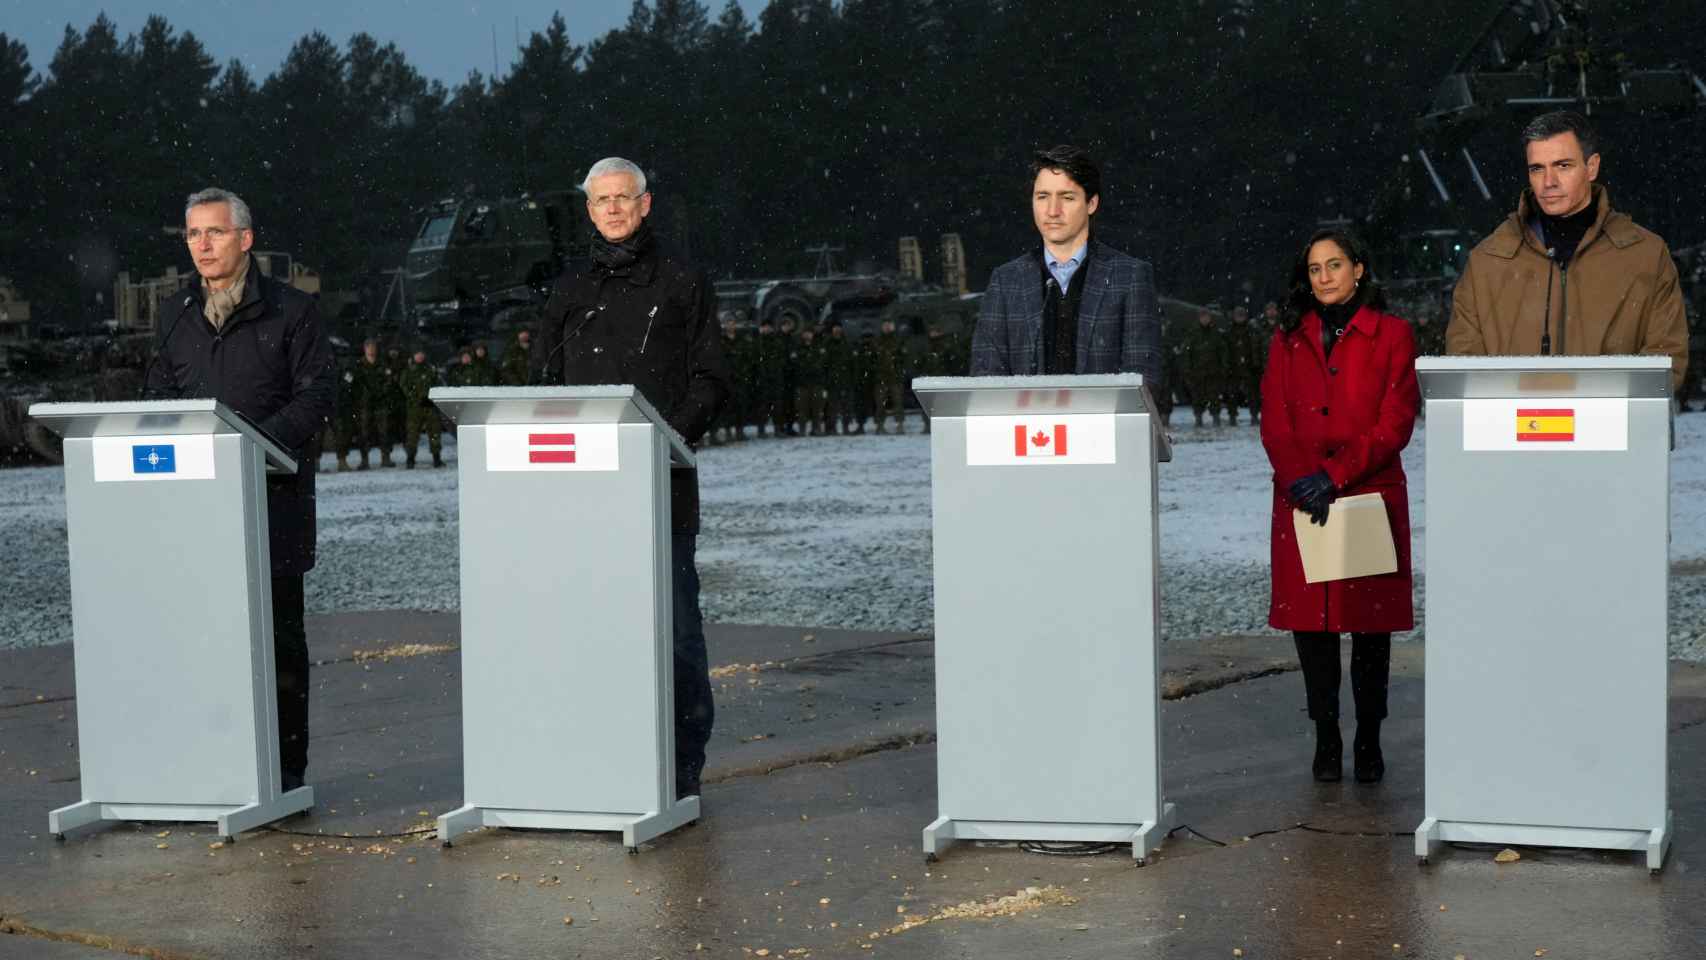 De i. a d.: El secretario general de la OTAN, Jens Stoltenberg, el primer ministro de Letonia, Arturs Krisjanis Karins, el primer ministro de Canadá, Justin Trudeau y el presidente español, Pedro Sánchez.